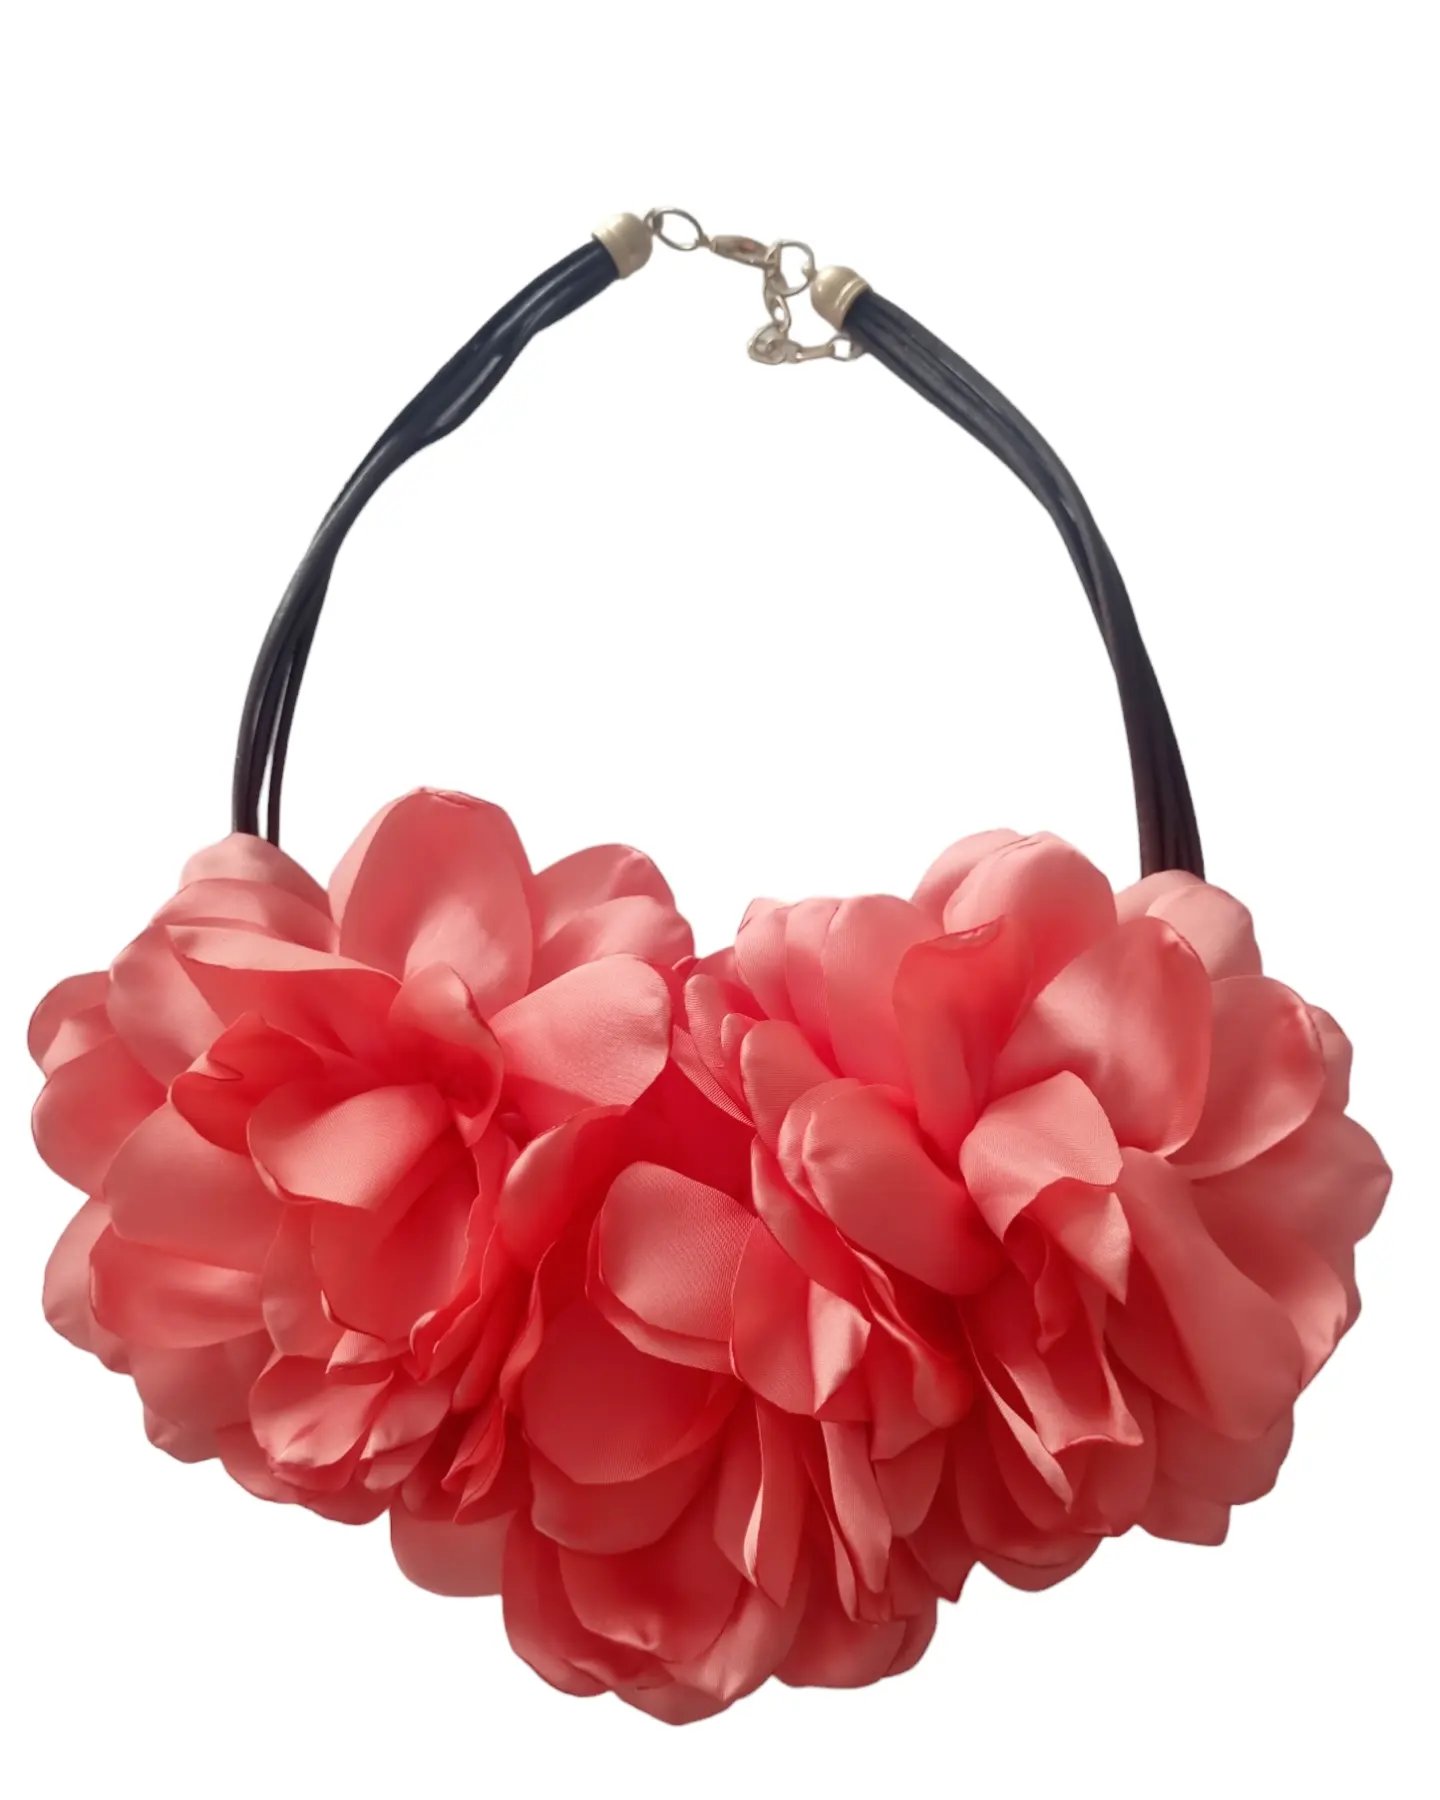 Collana girocollo realizzata con fiori in tessuto.
Lunghezza regolabile 58cm
Colori corallo